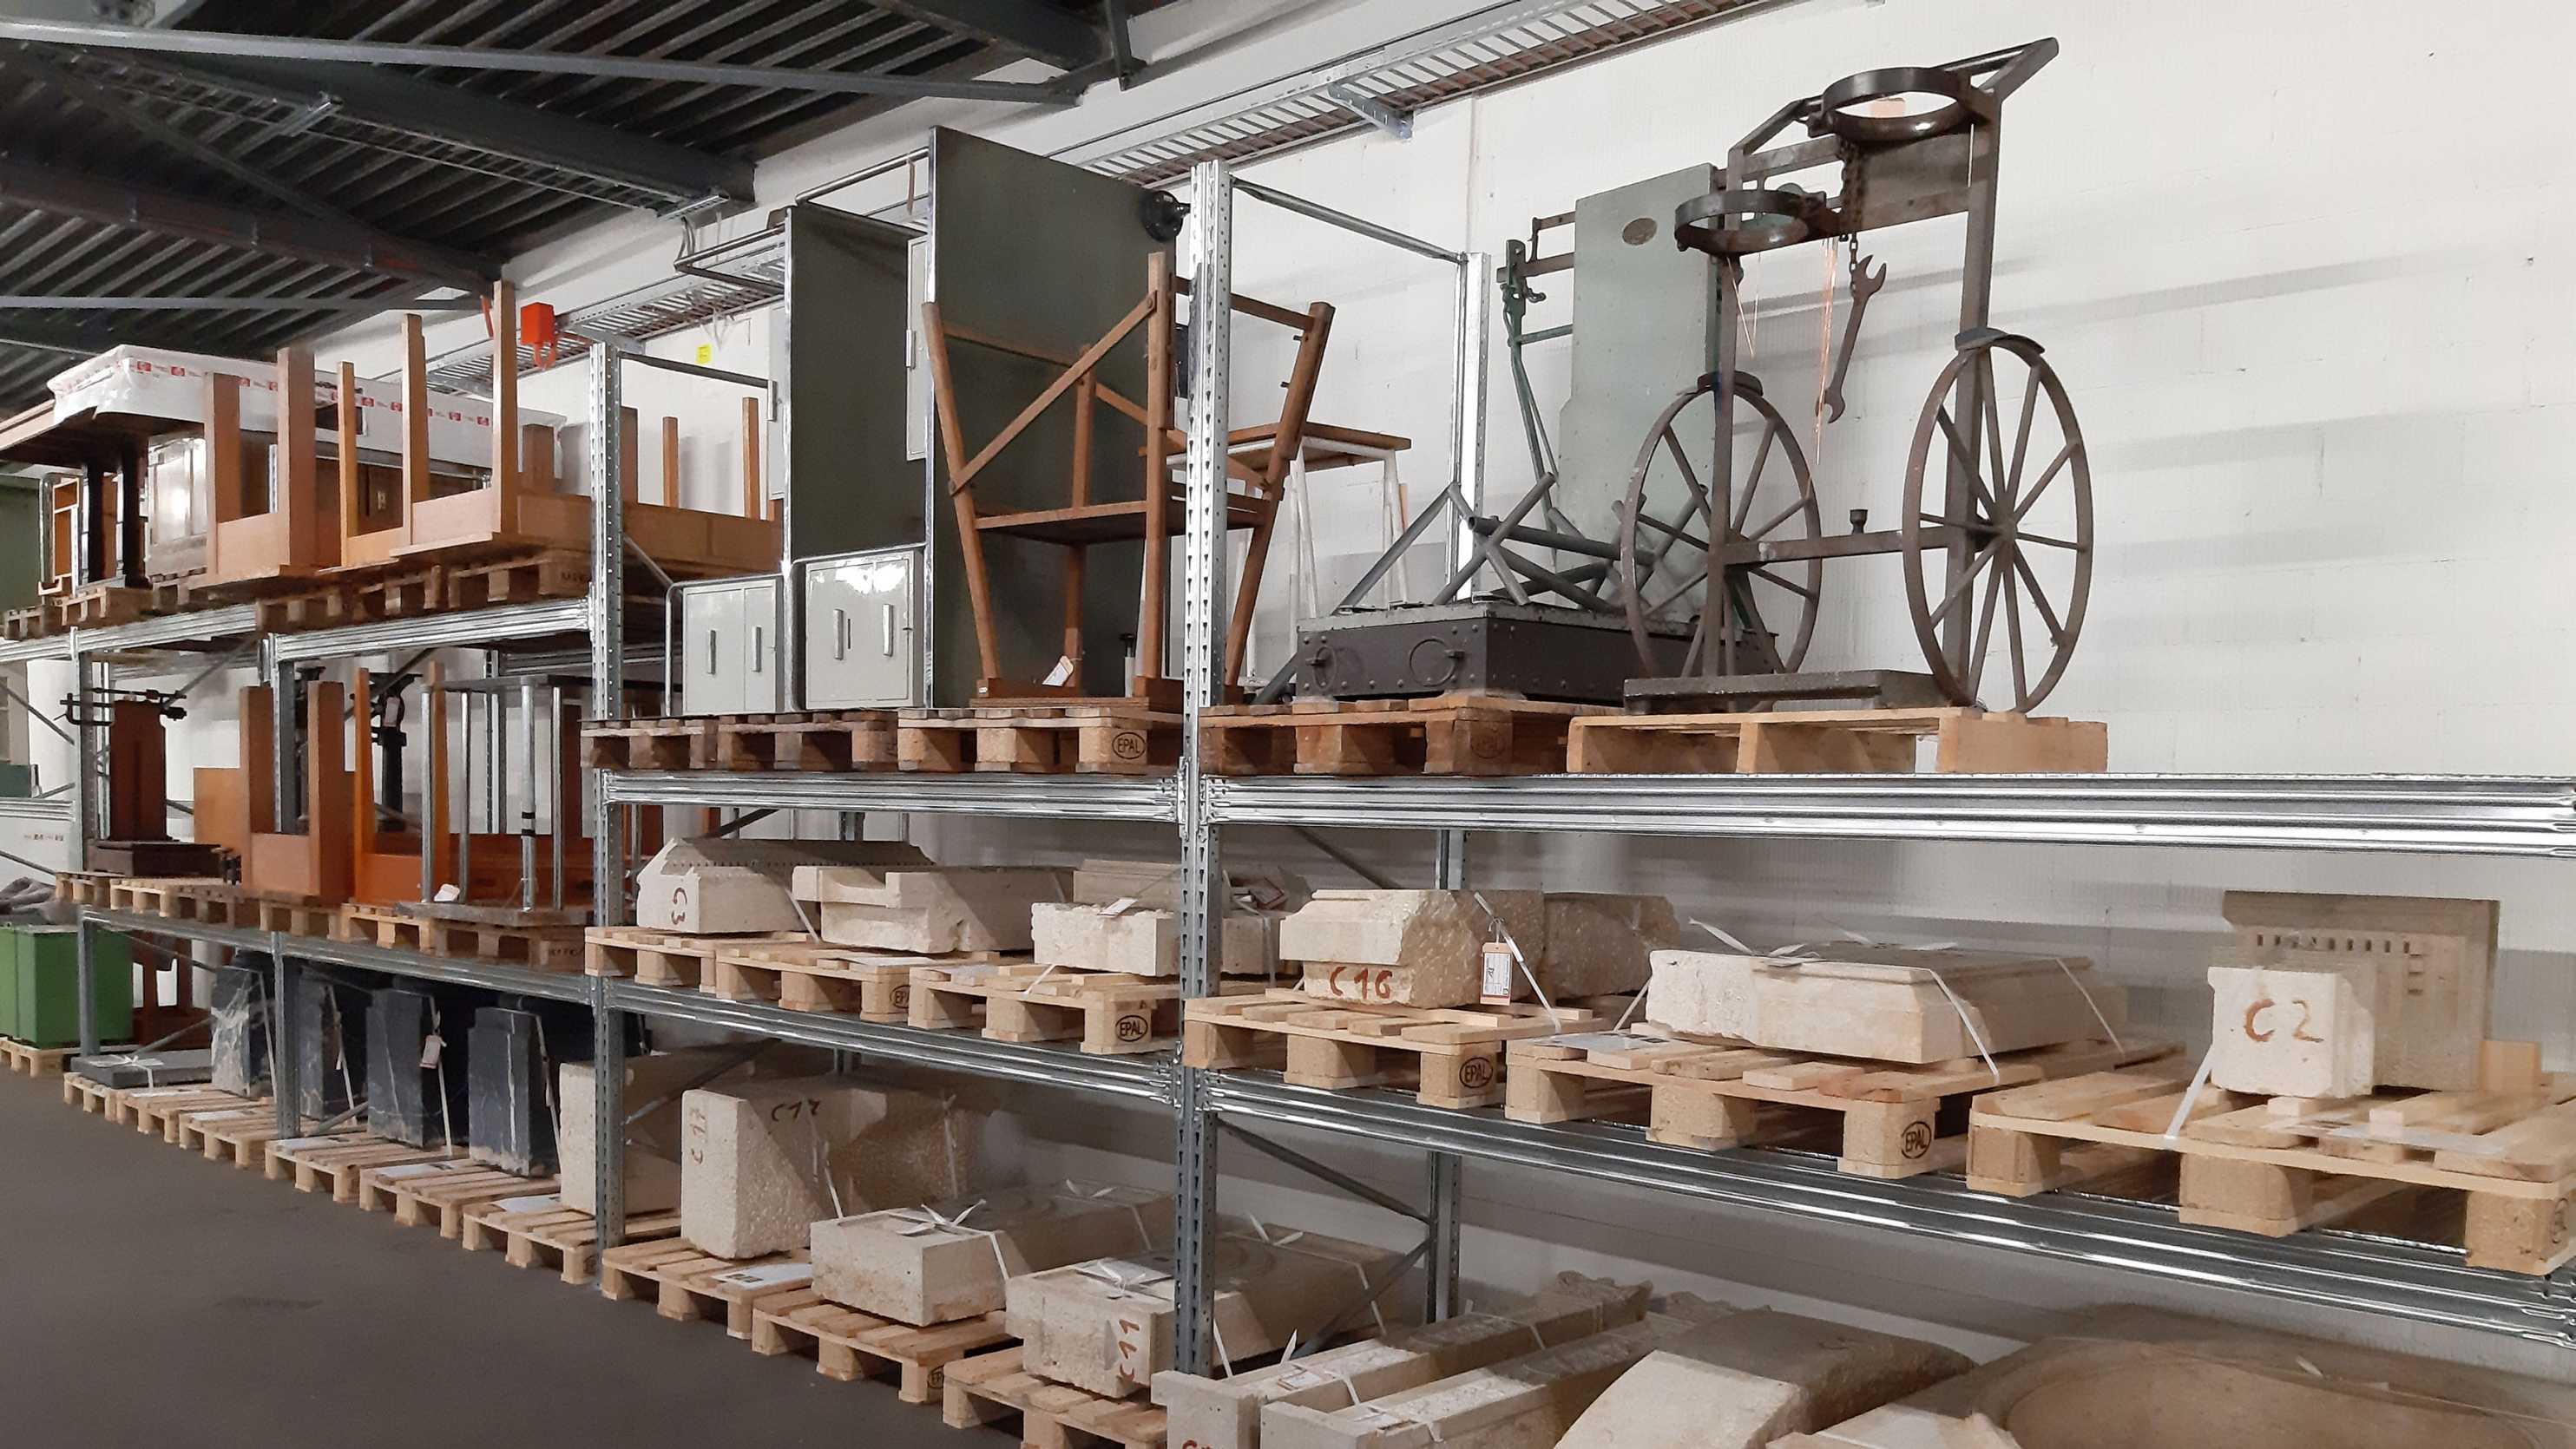 Im zentralen Depot lagern 700 Sammlungsstücke, die nun in der Ausstellung zur Baukultur gzeigt werden. (Bild: ETH Zürich)